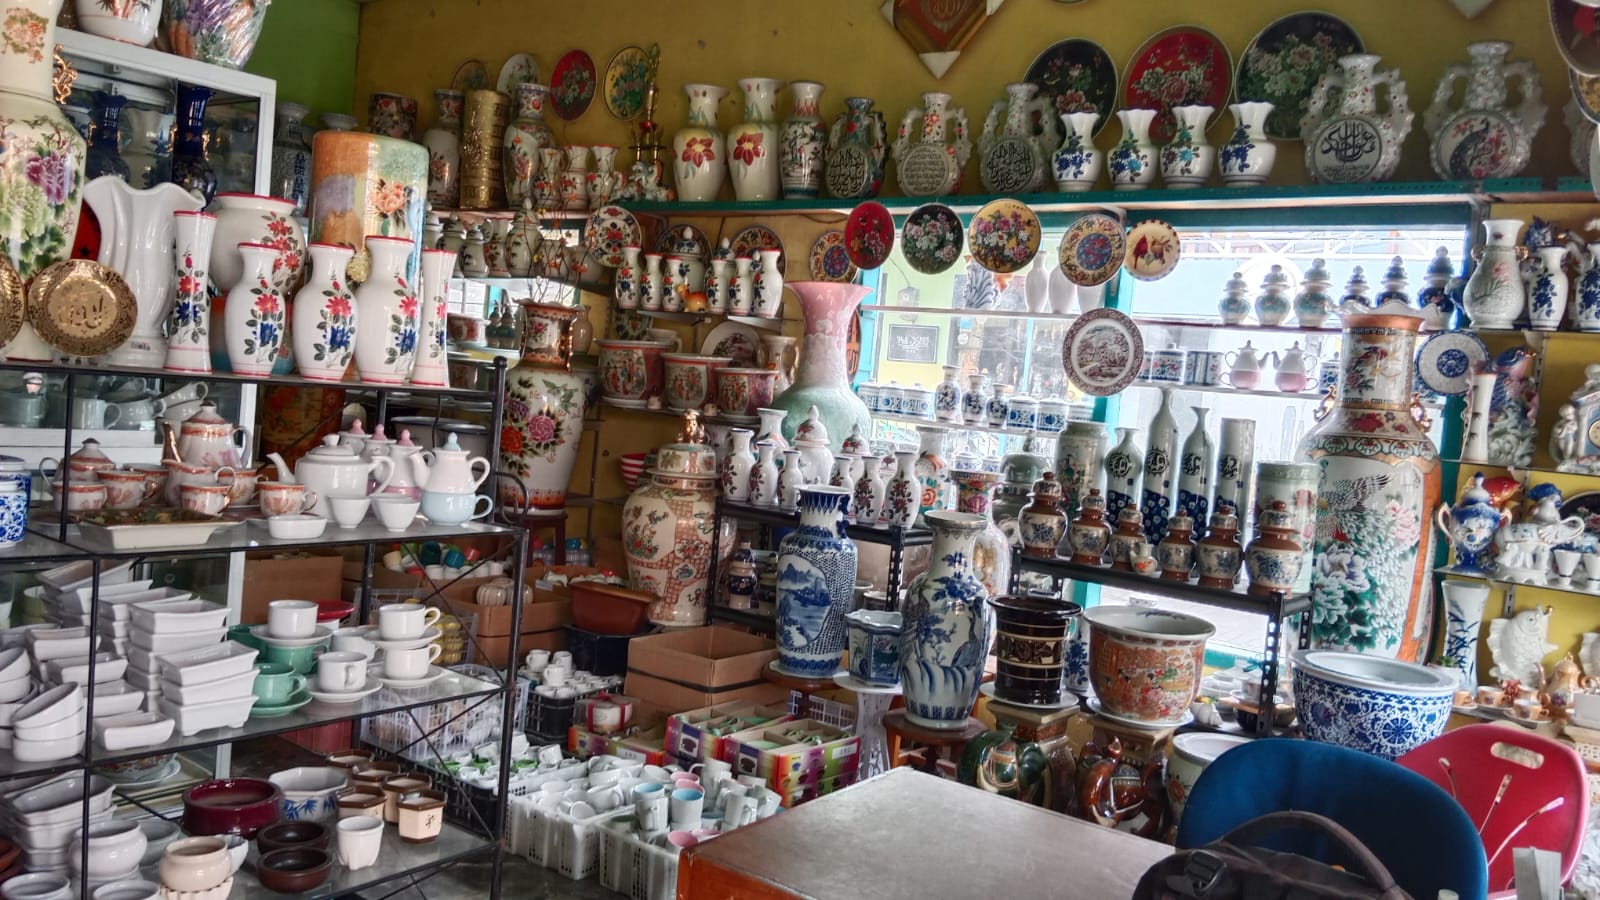 Sebuah showroom kerajinan keramik di Kampoeng Wisata Keramik Dinoyo.